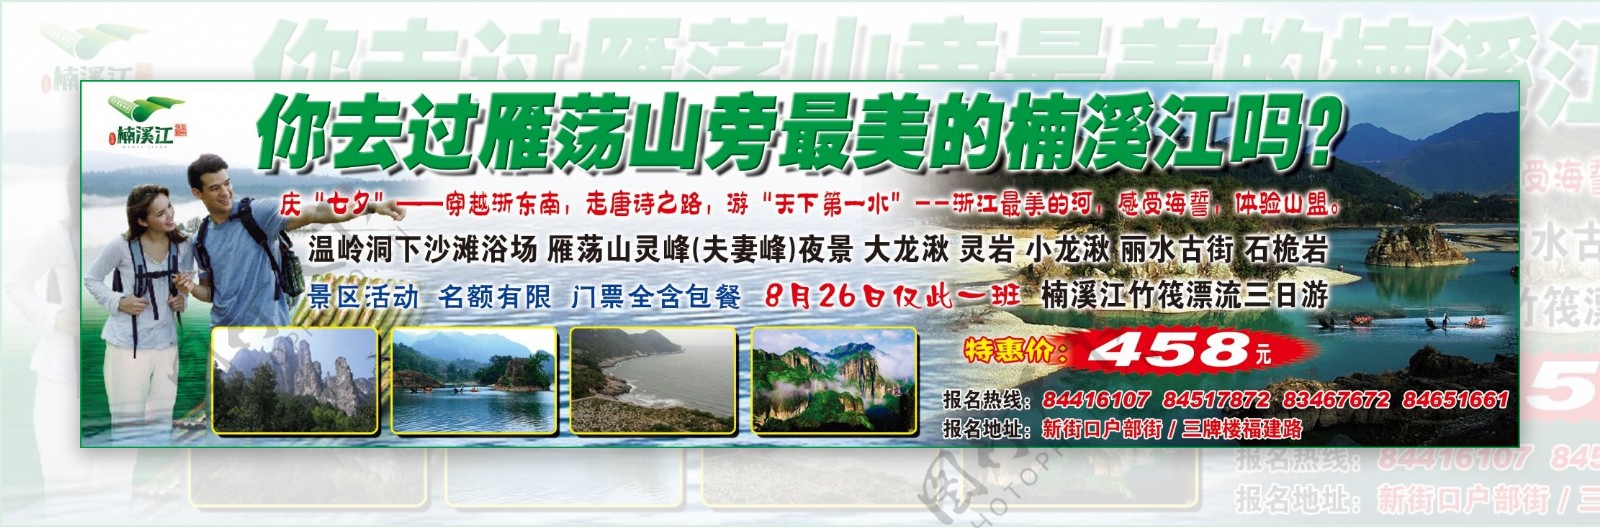 楠溪江风景区广告宣传图片